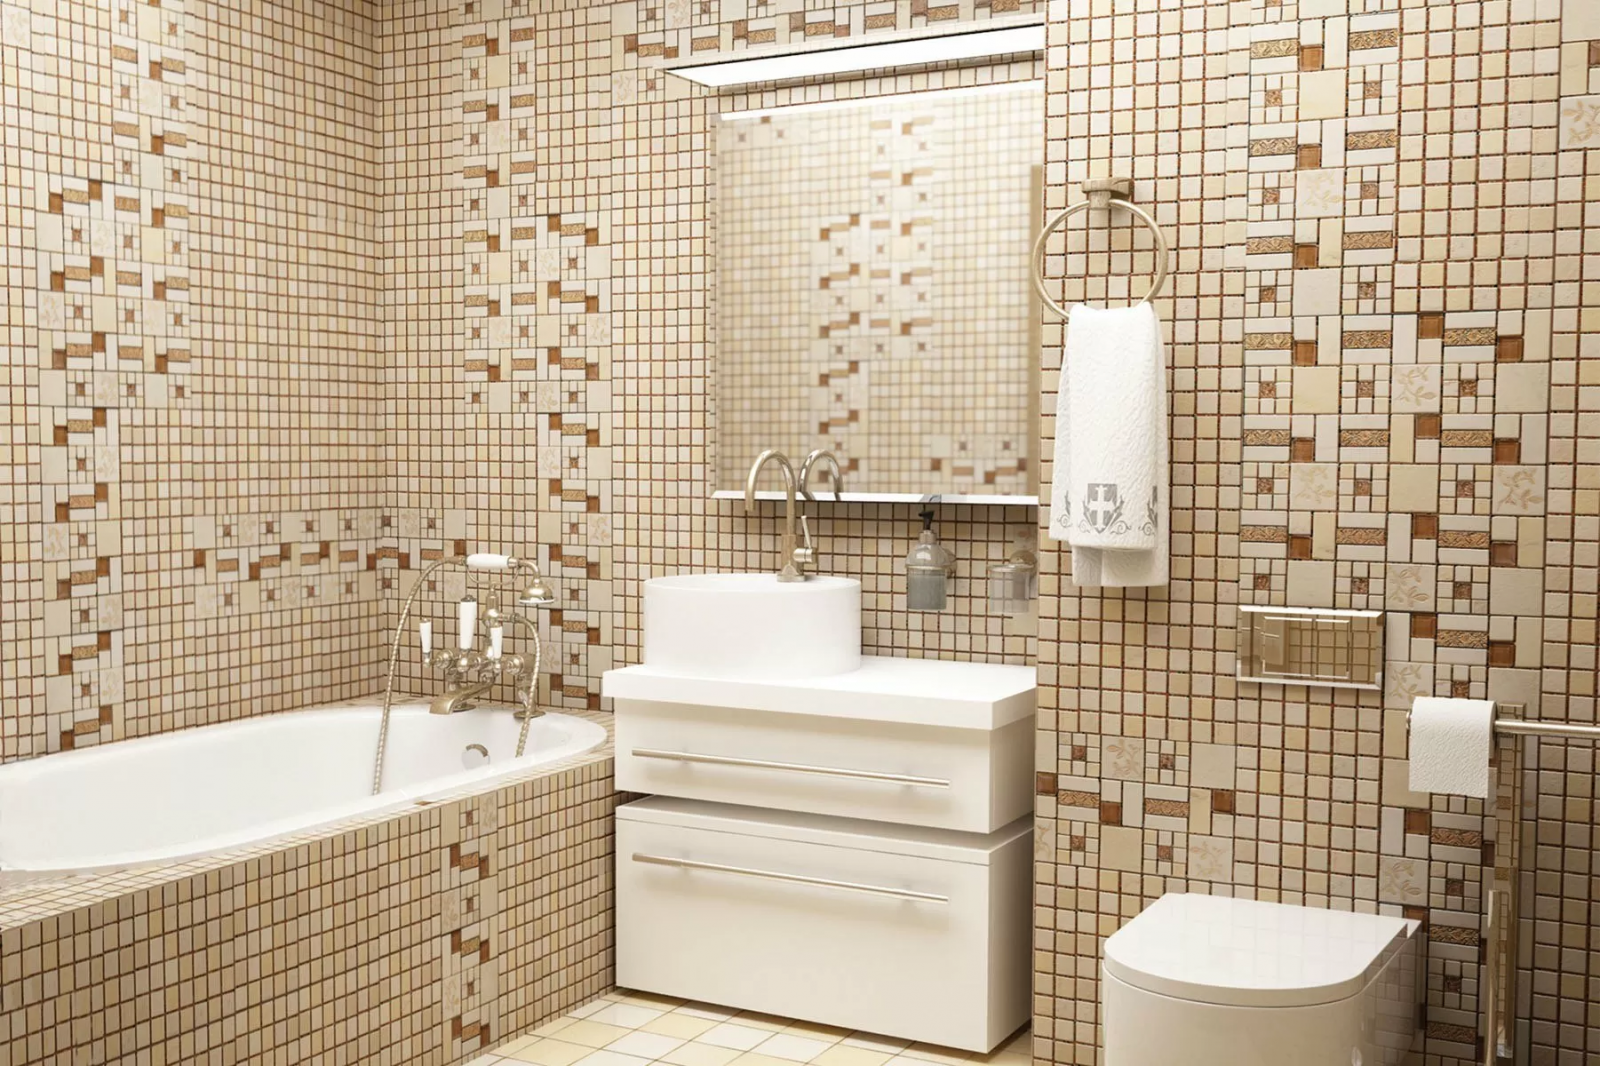 Мозаика для ванной plitka mosaica ru. Мозаика natural Mosaic. Мозаика в ванной комнате. Мозаичная плитка в ванной комнате. Ванна с мозаикой.